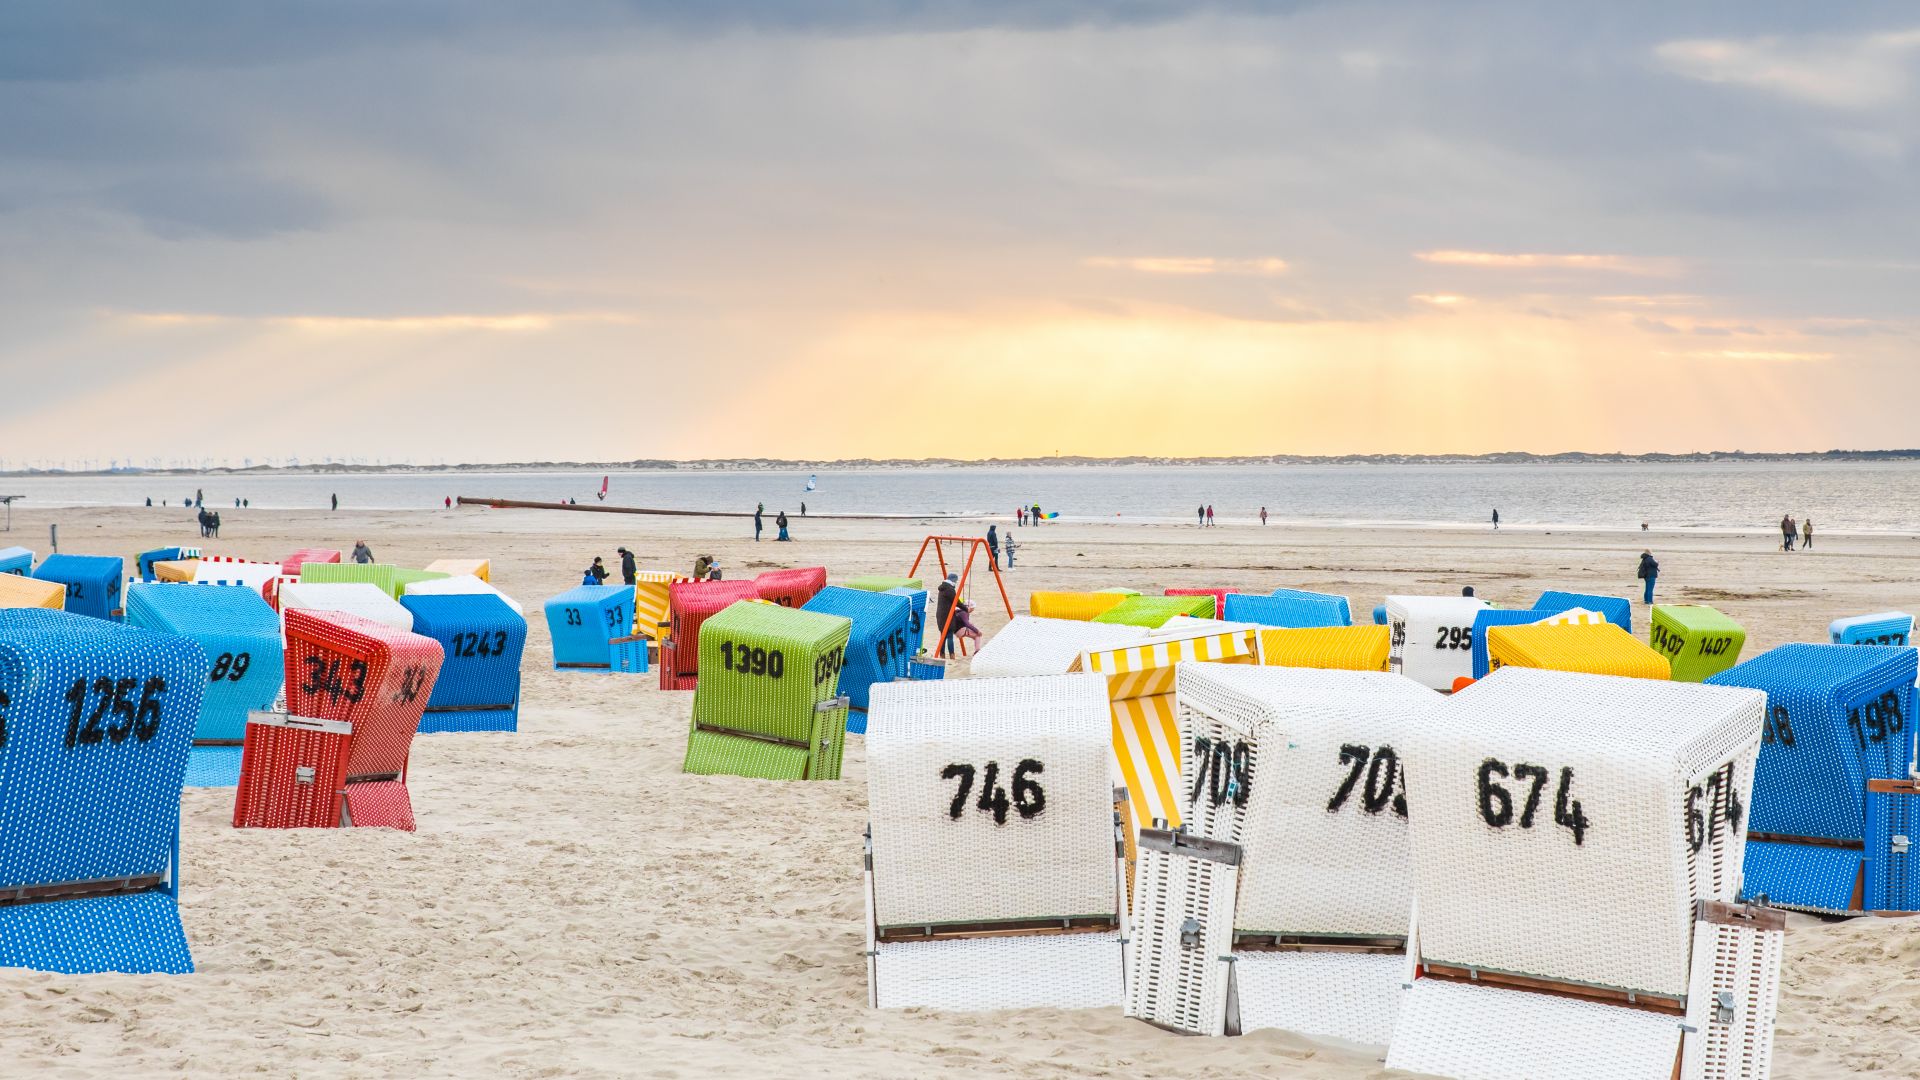 Langeoog: Colourful beach chairs on Langeoog beach